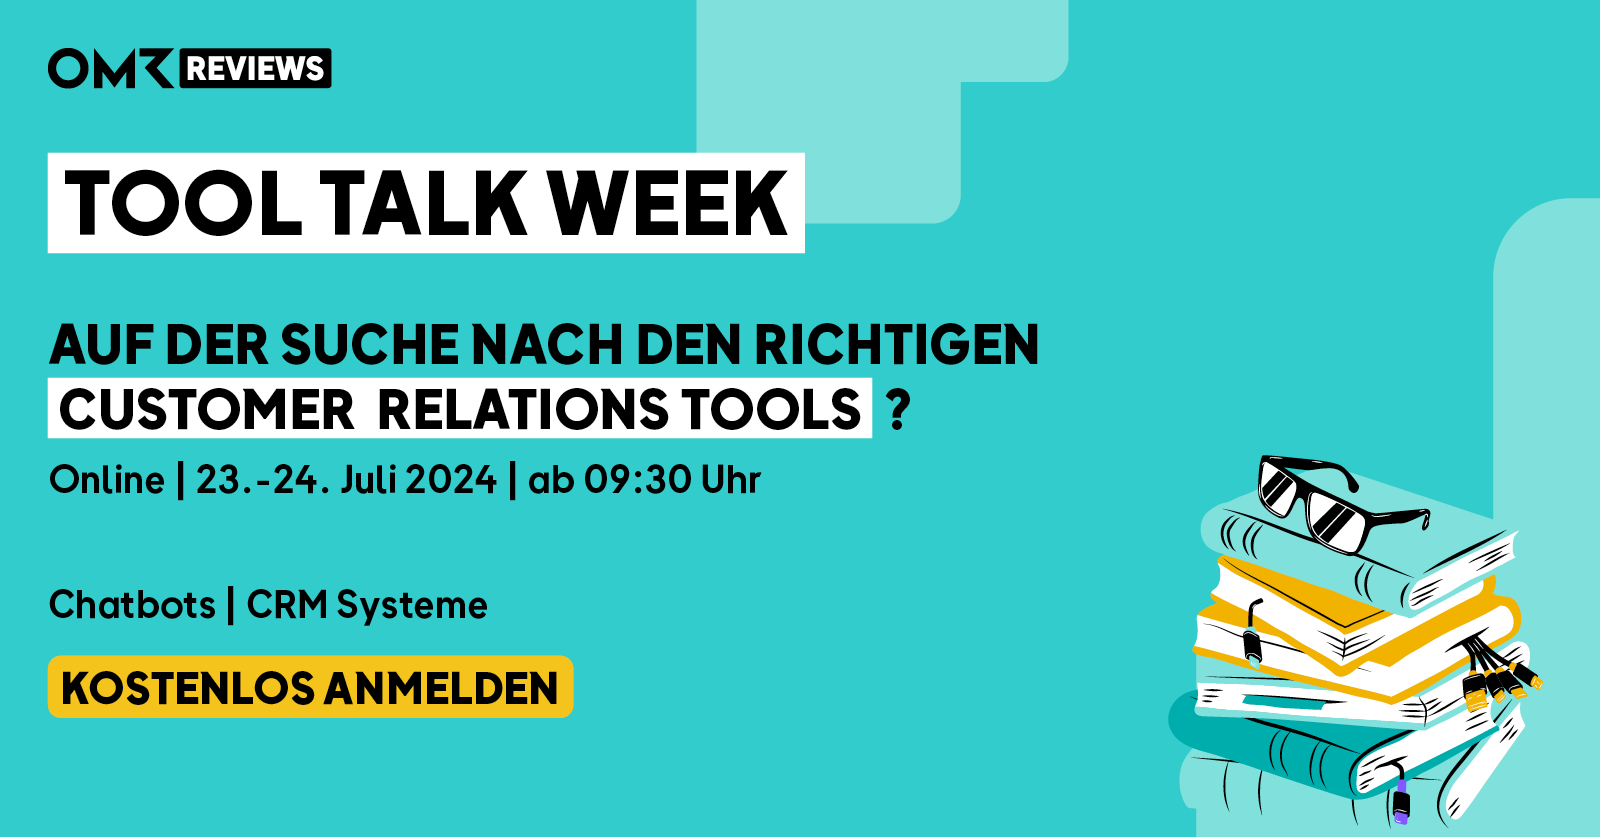 OMR Reviews Tool Talk Week: Customer Relations